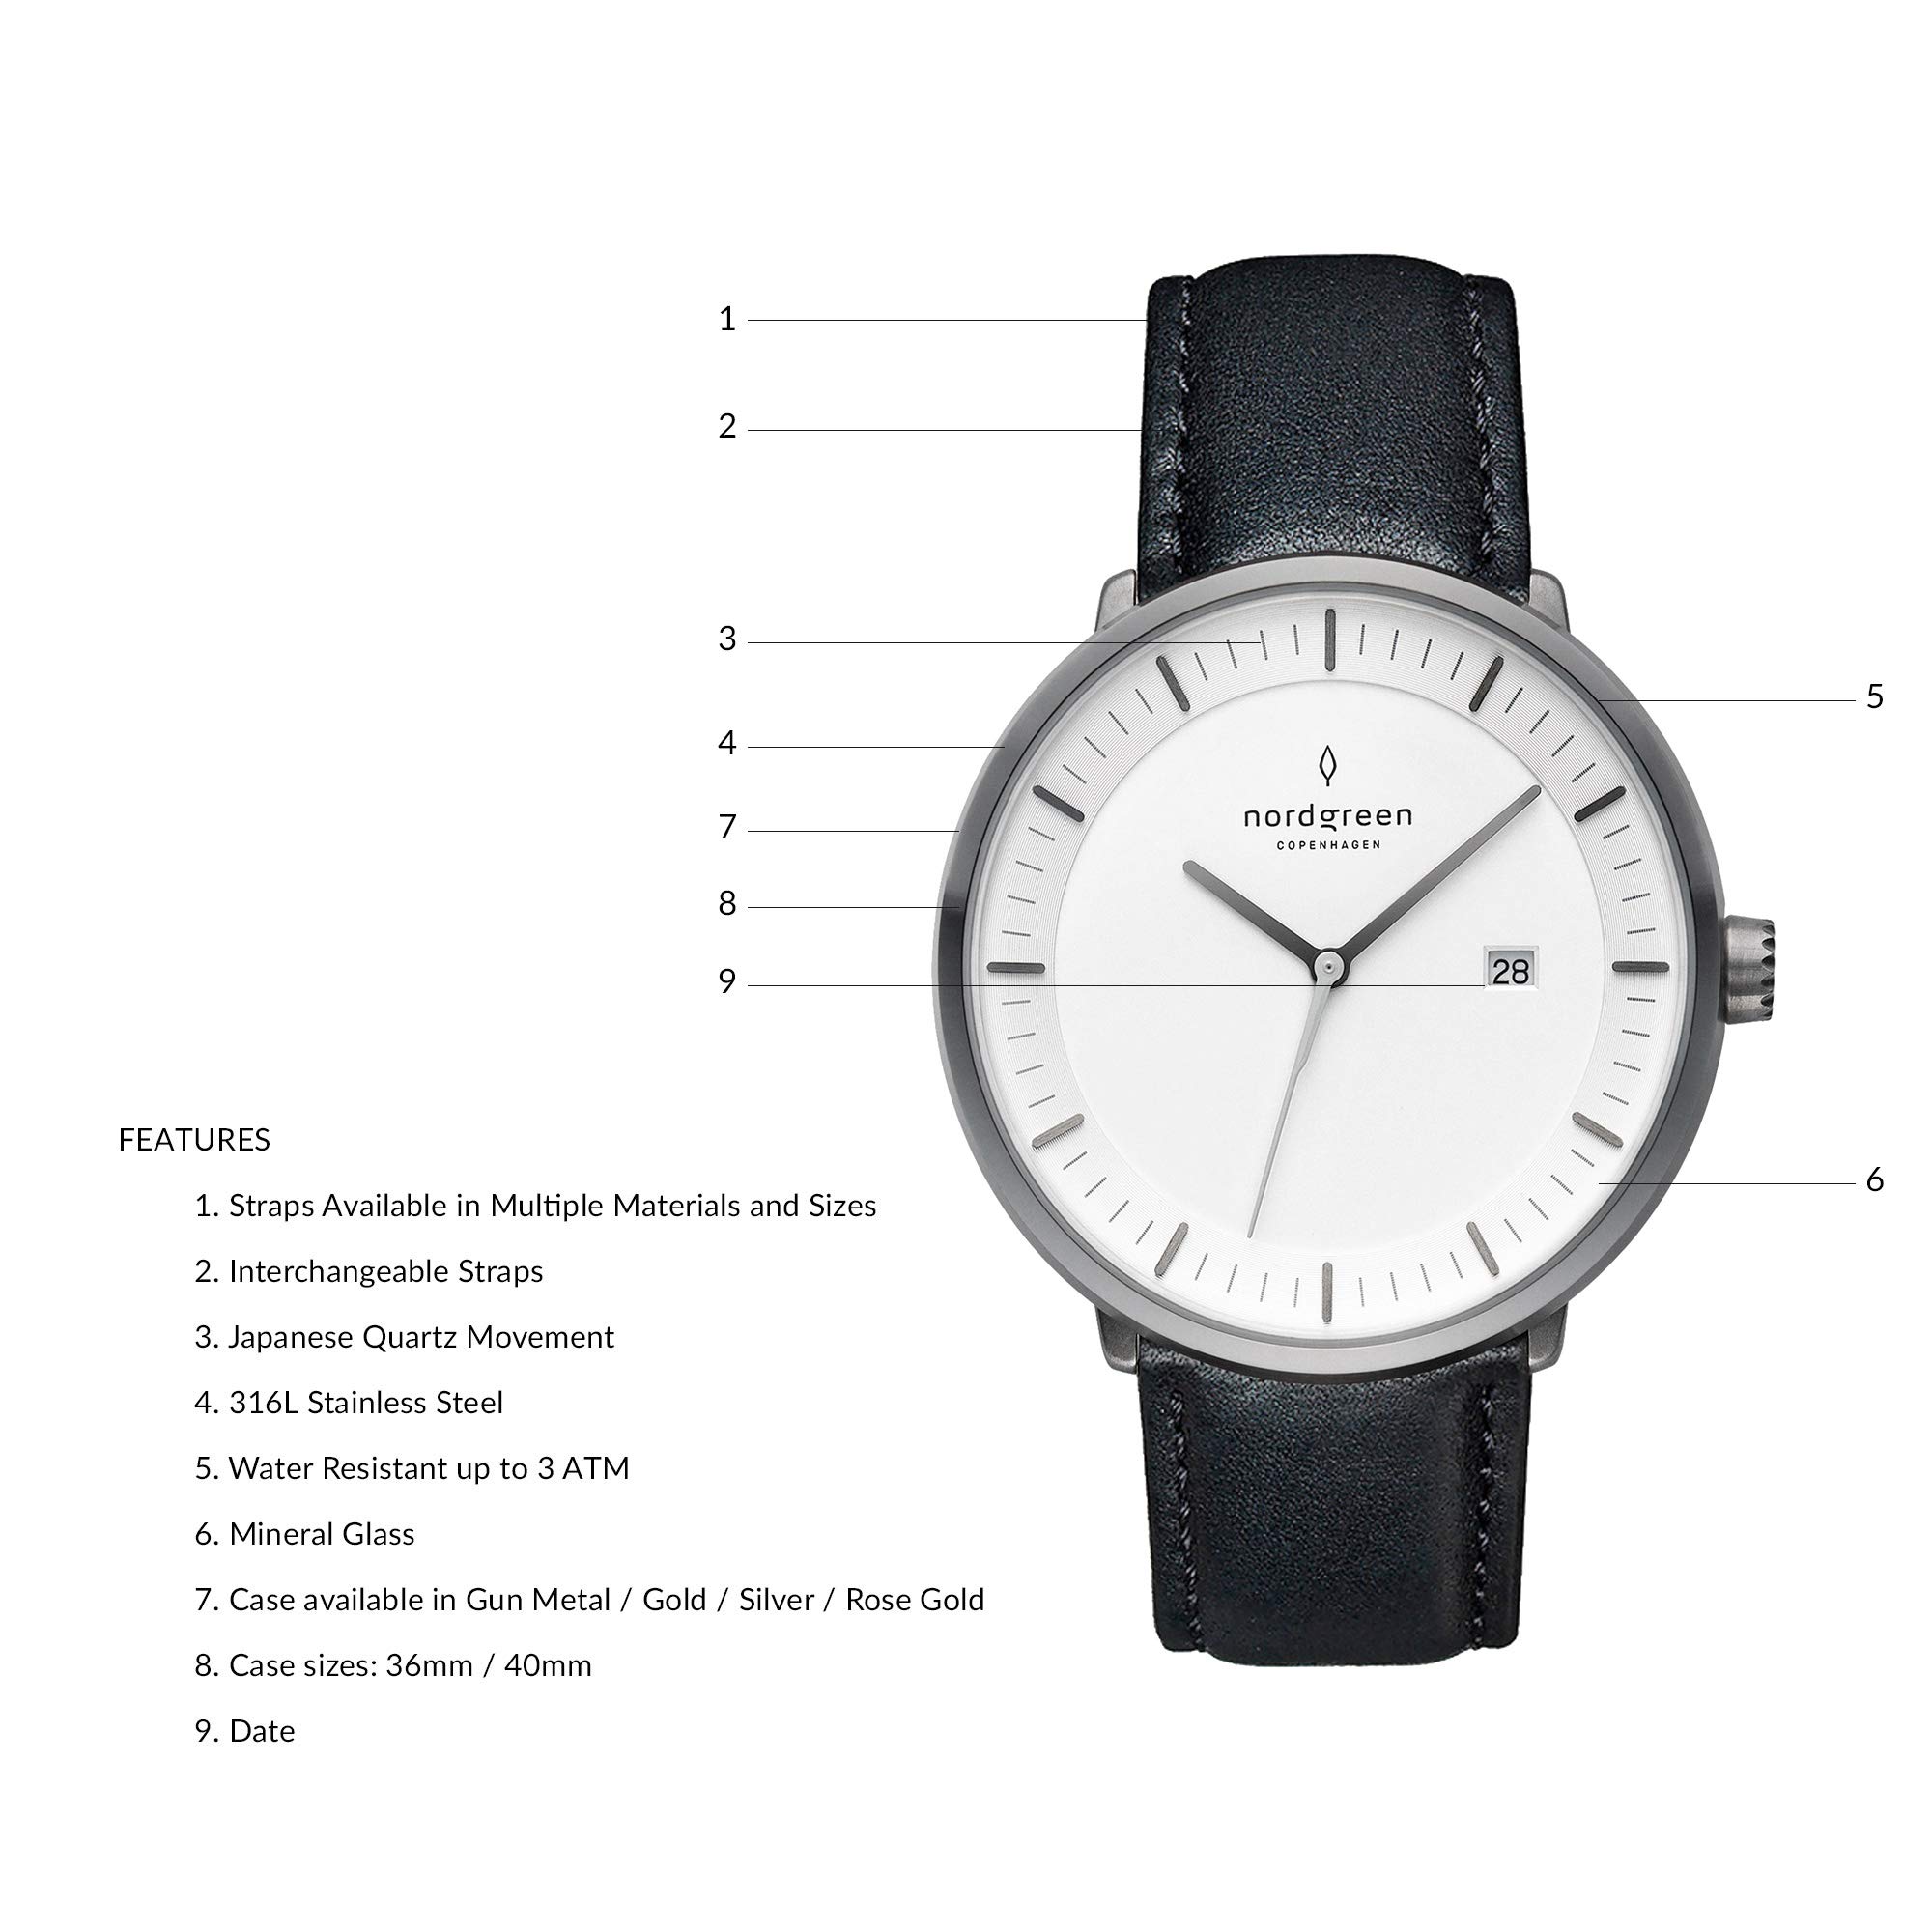 Nordgreen Skandinavische Design Uhr Analog Quarz Anthrazit | Weißes Ziffernblatt | Austauschbare Armbänder | Modell: Philosopher